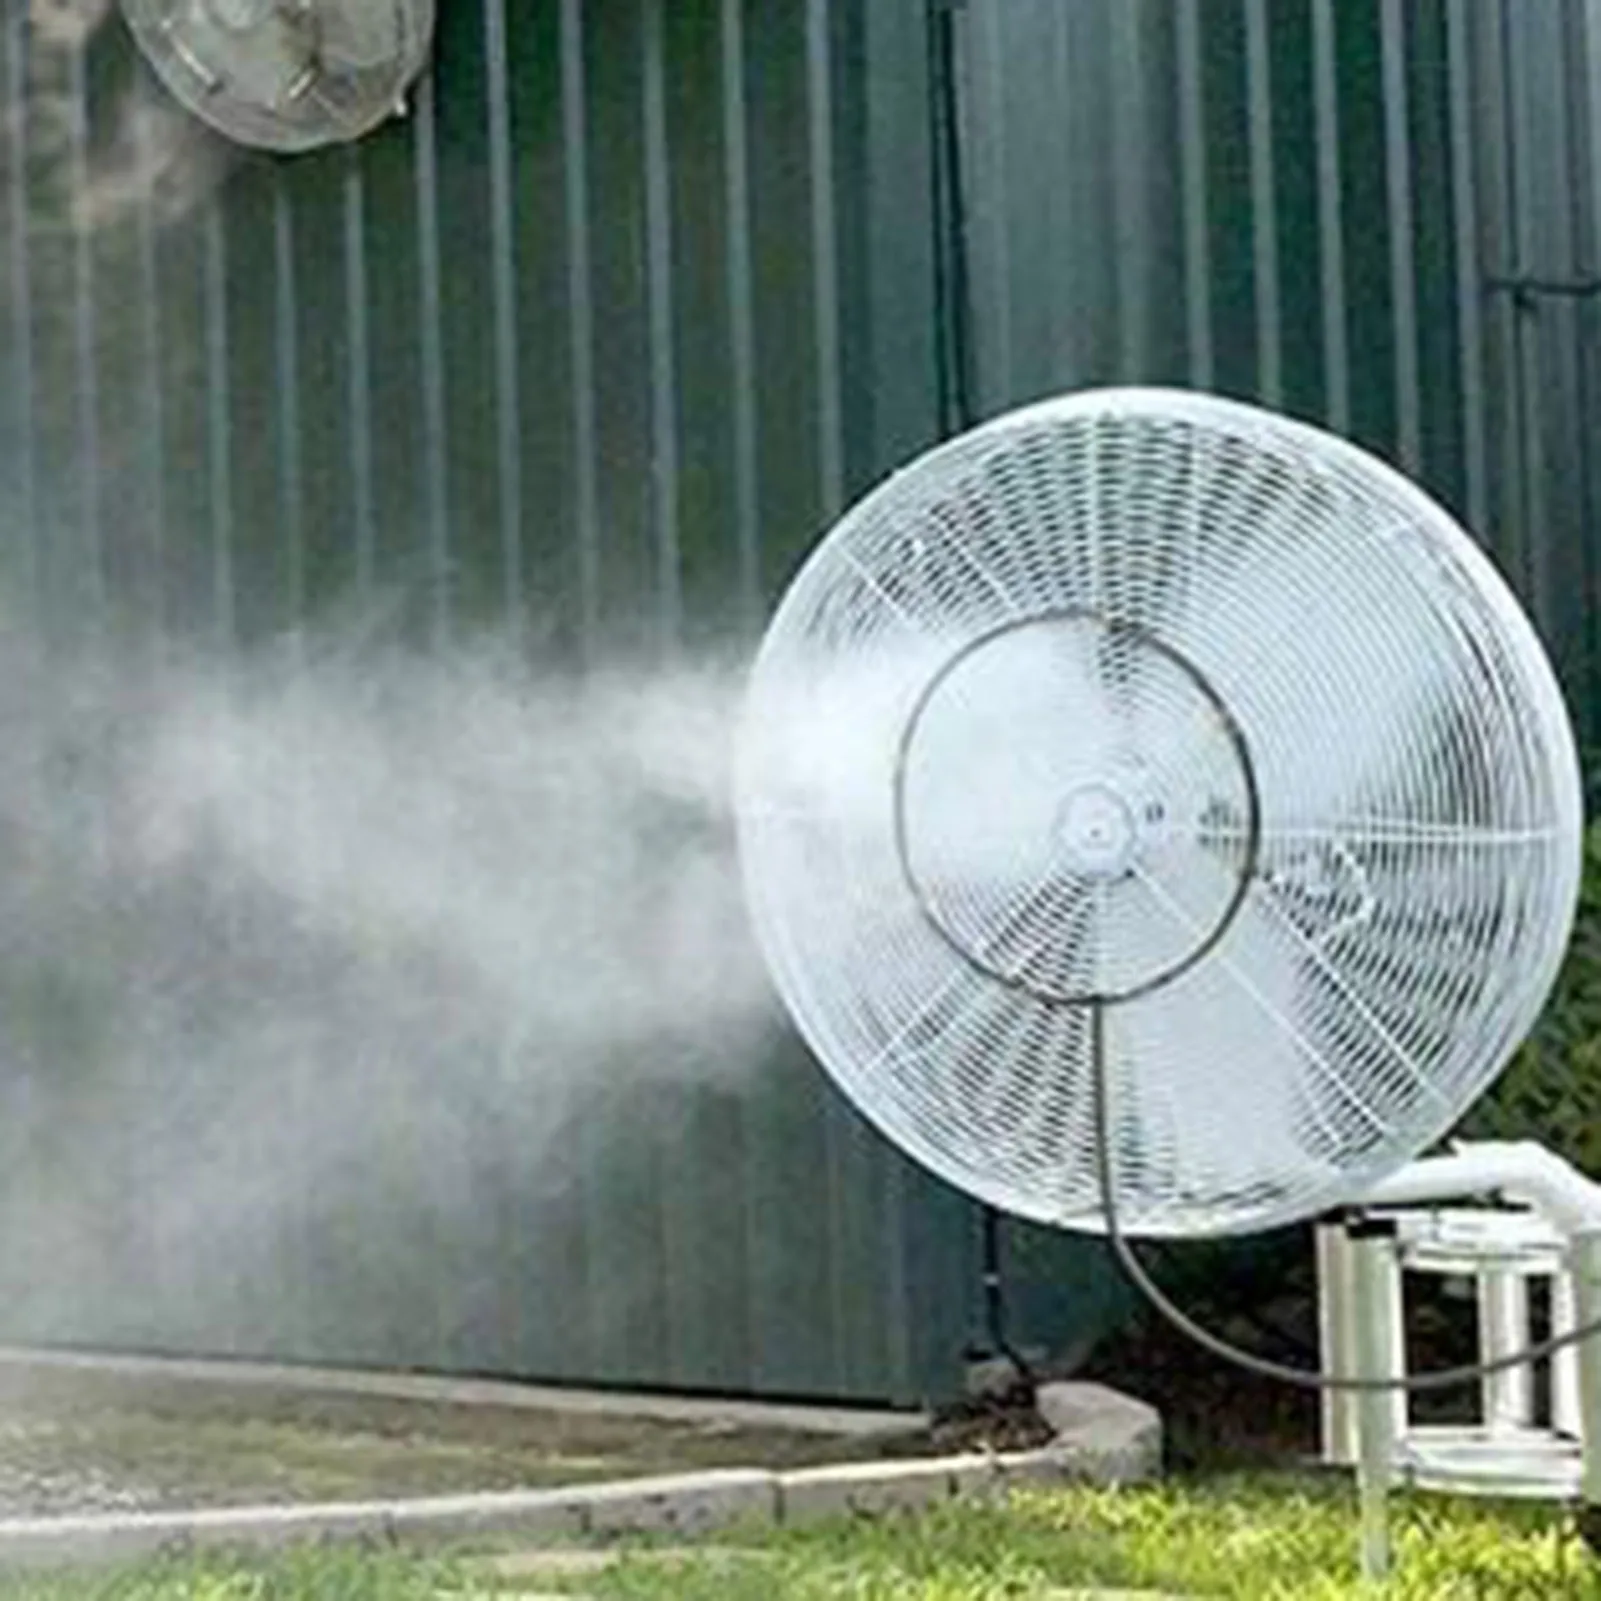 16-Zoll-Sprühnebel System Außen ventilator Kühlung tragbare Terrasse Garten Spray Sprinkler Nebel Kit Nebel Lüfter Düsen Kit Wassernebel Sprüh gerät